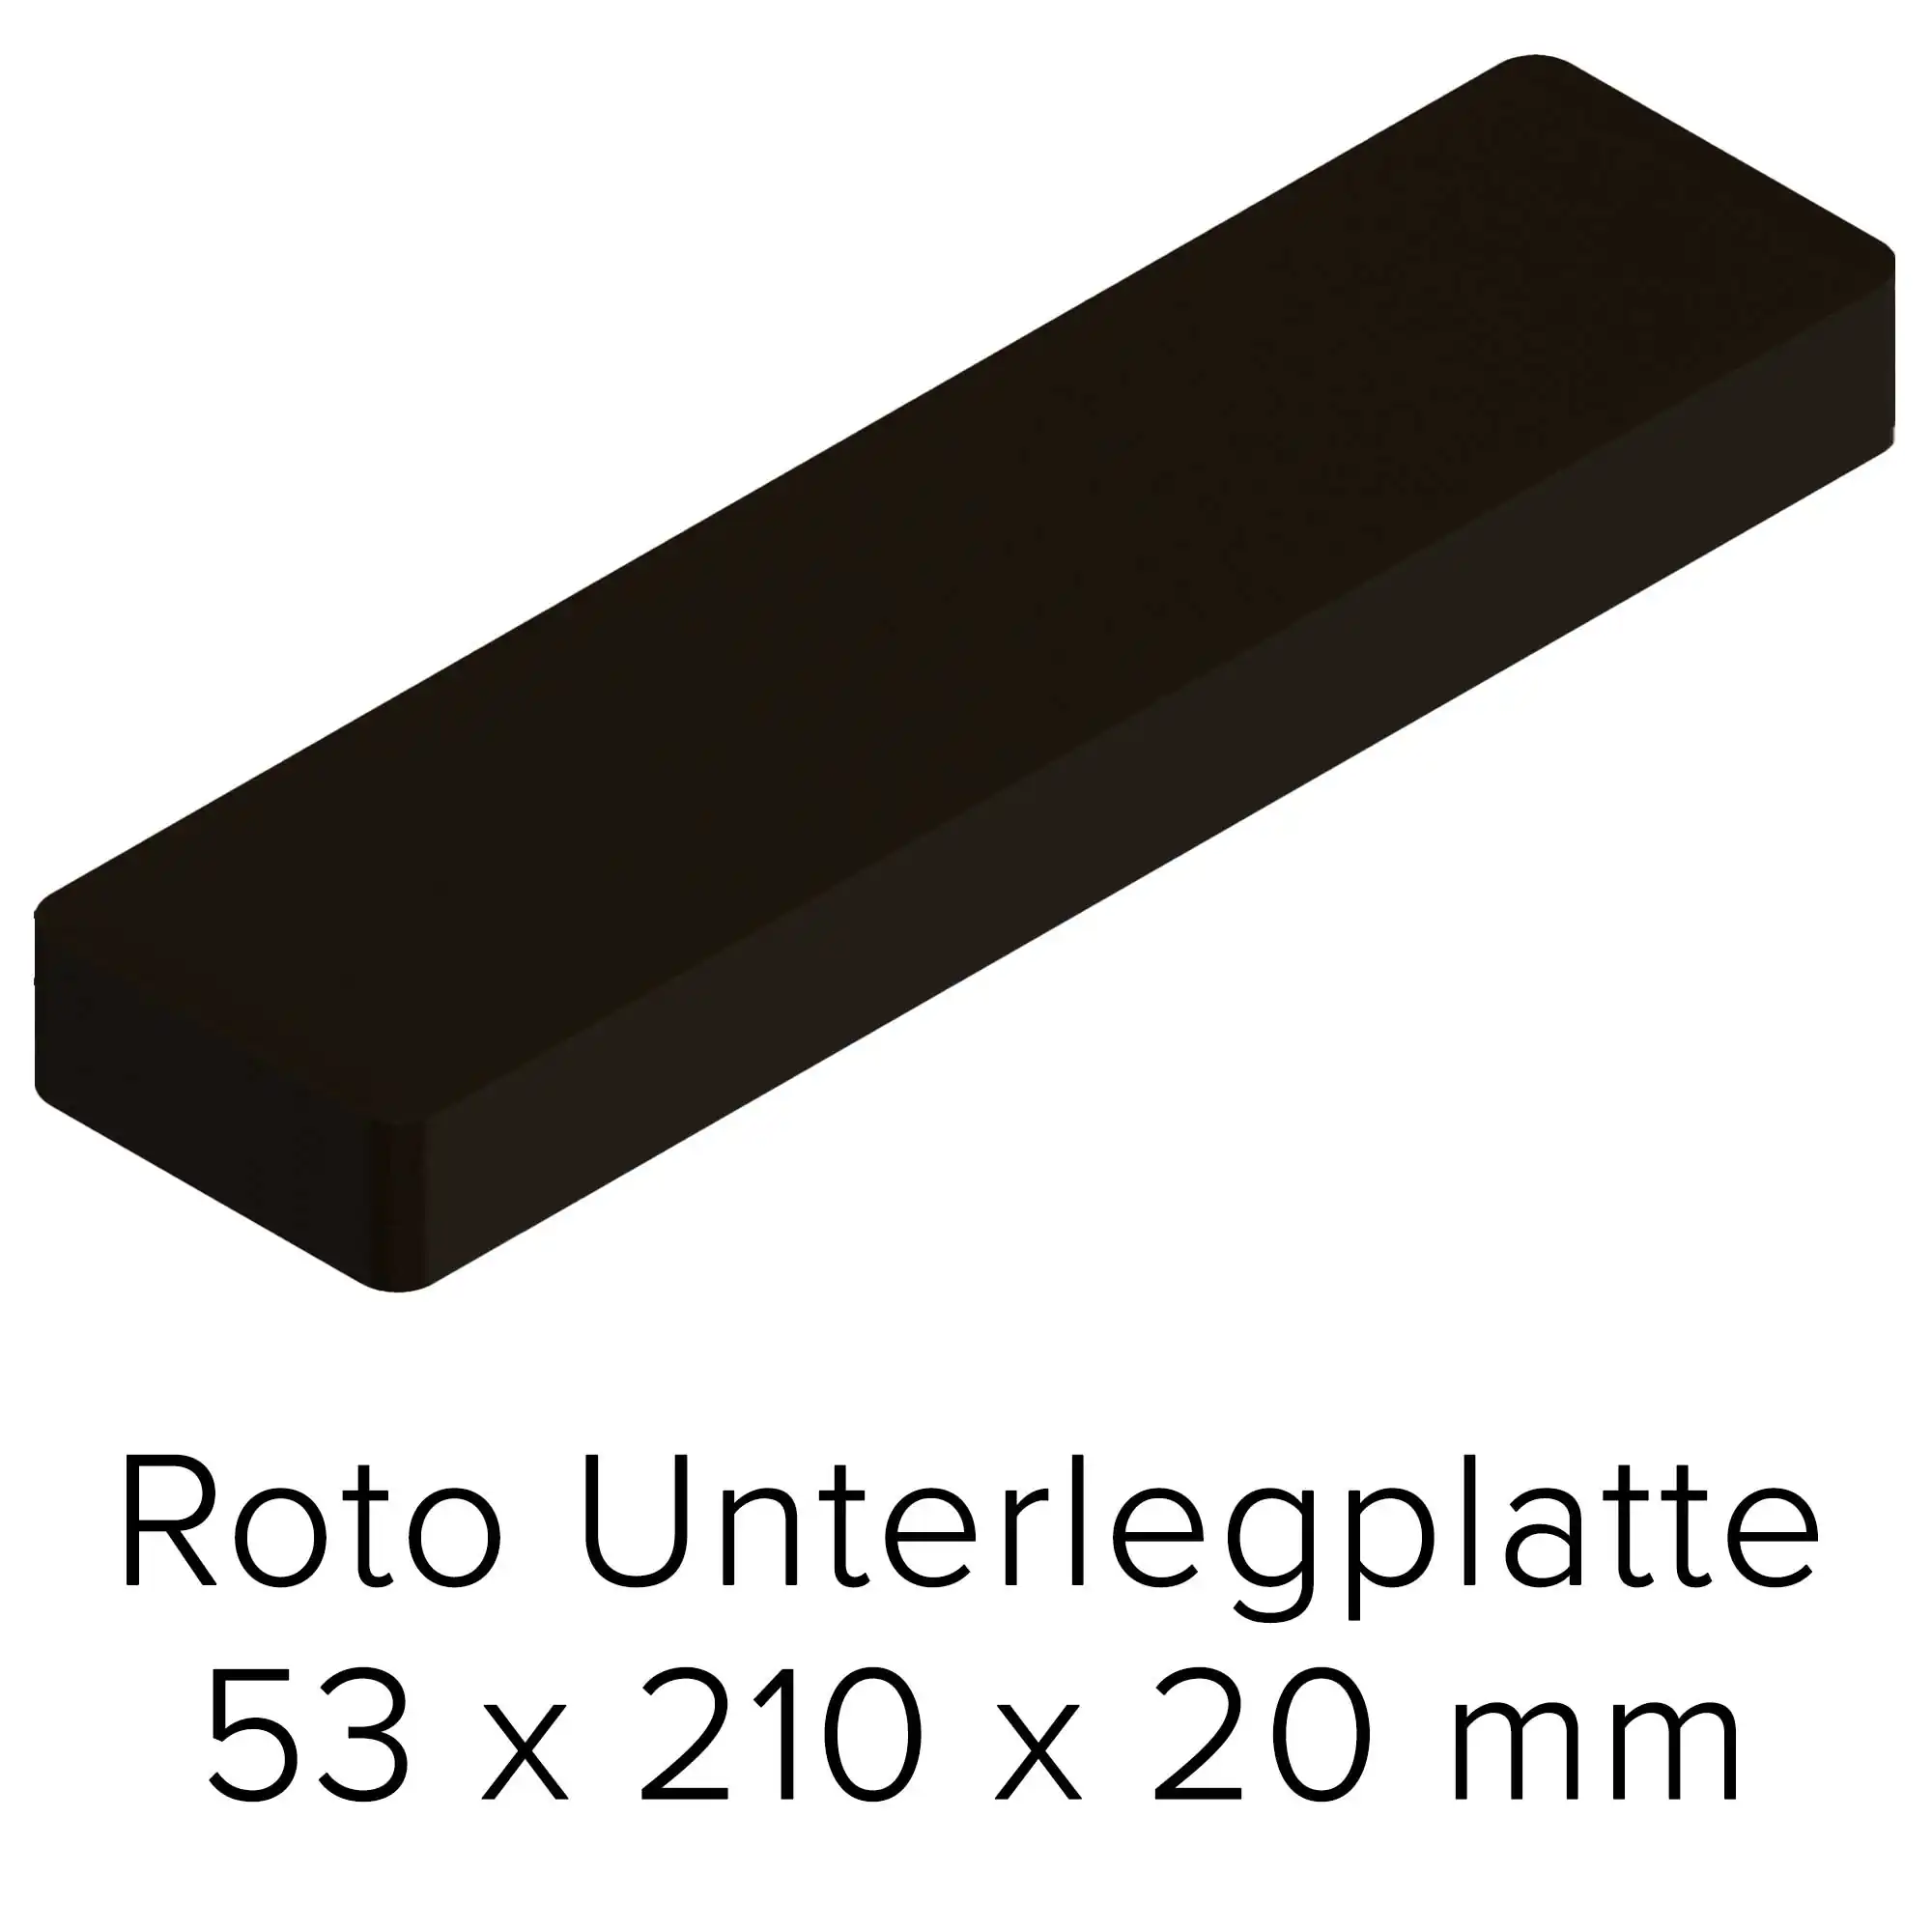 Roto Unterlegplatte 53 x 210 x 20 mm